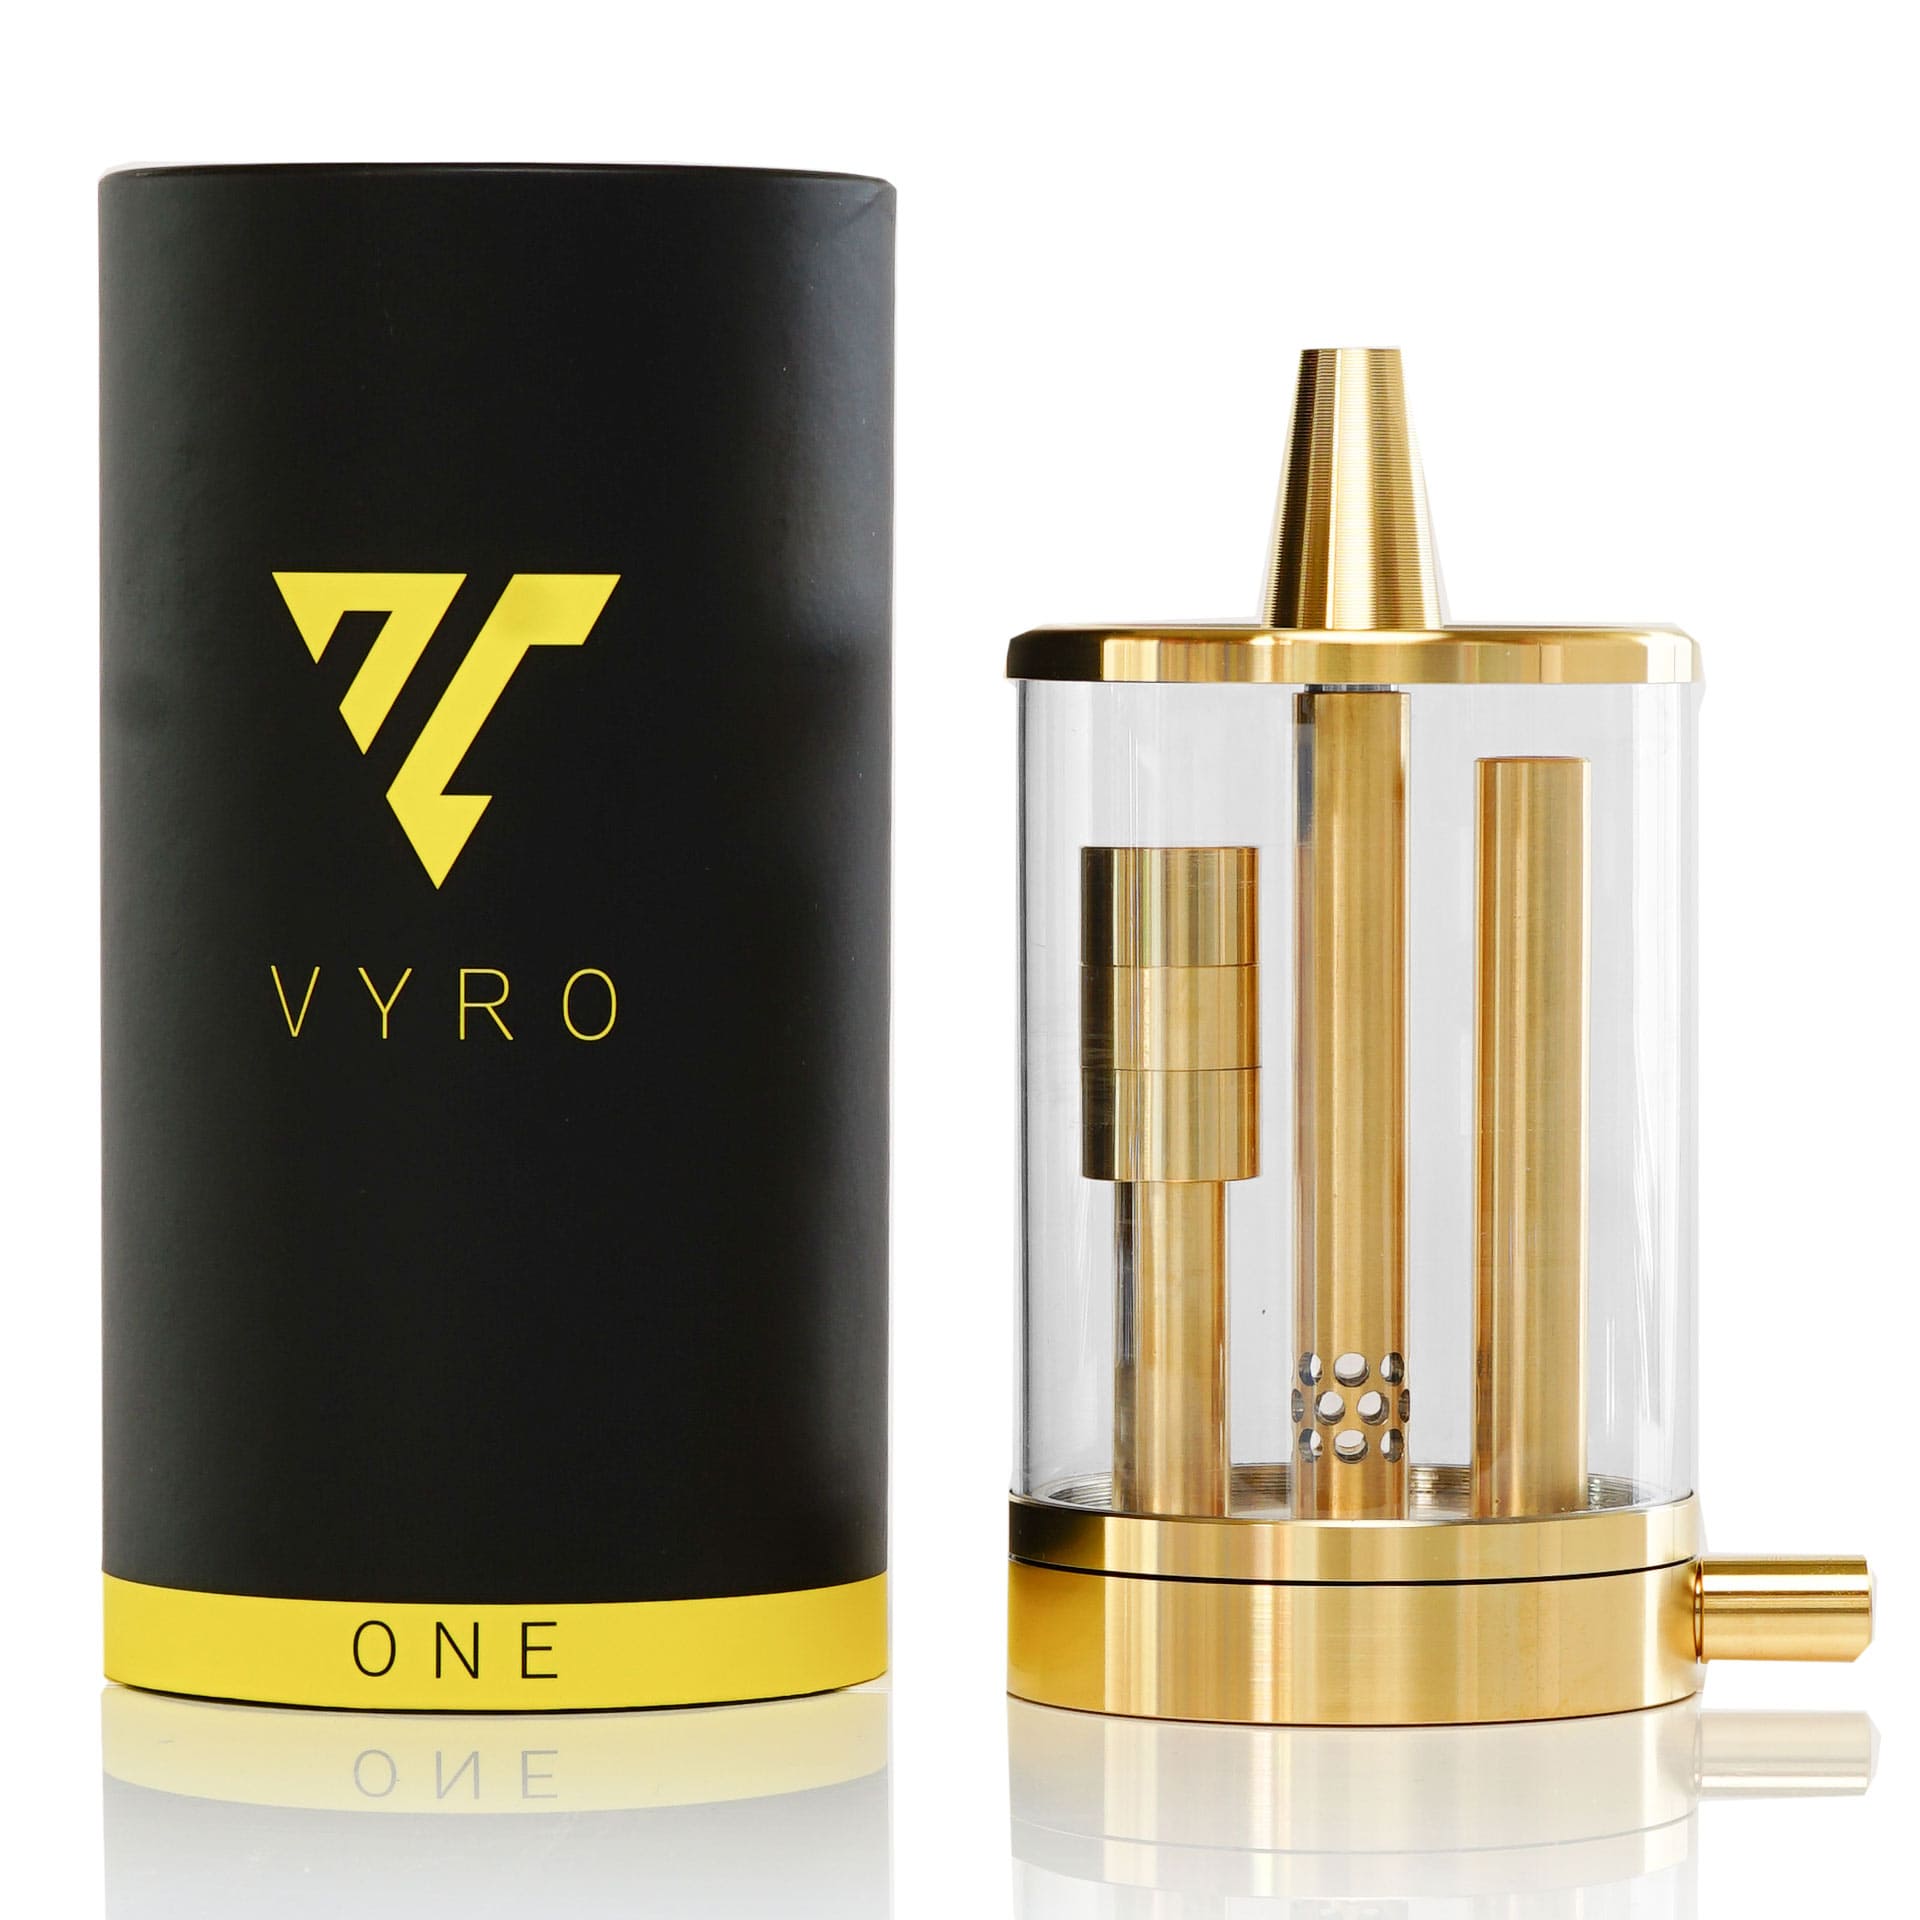 Vyro One / Ghost / 24 Karat Gold